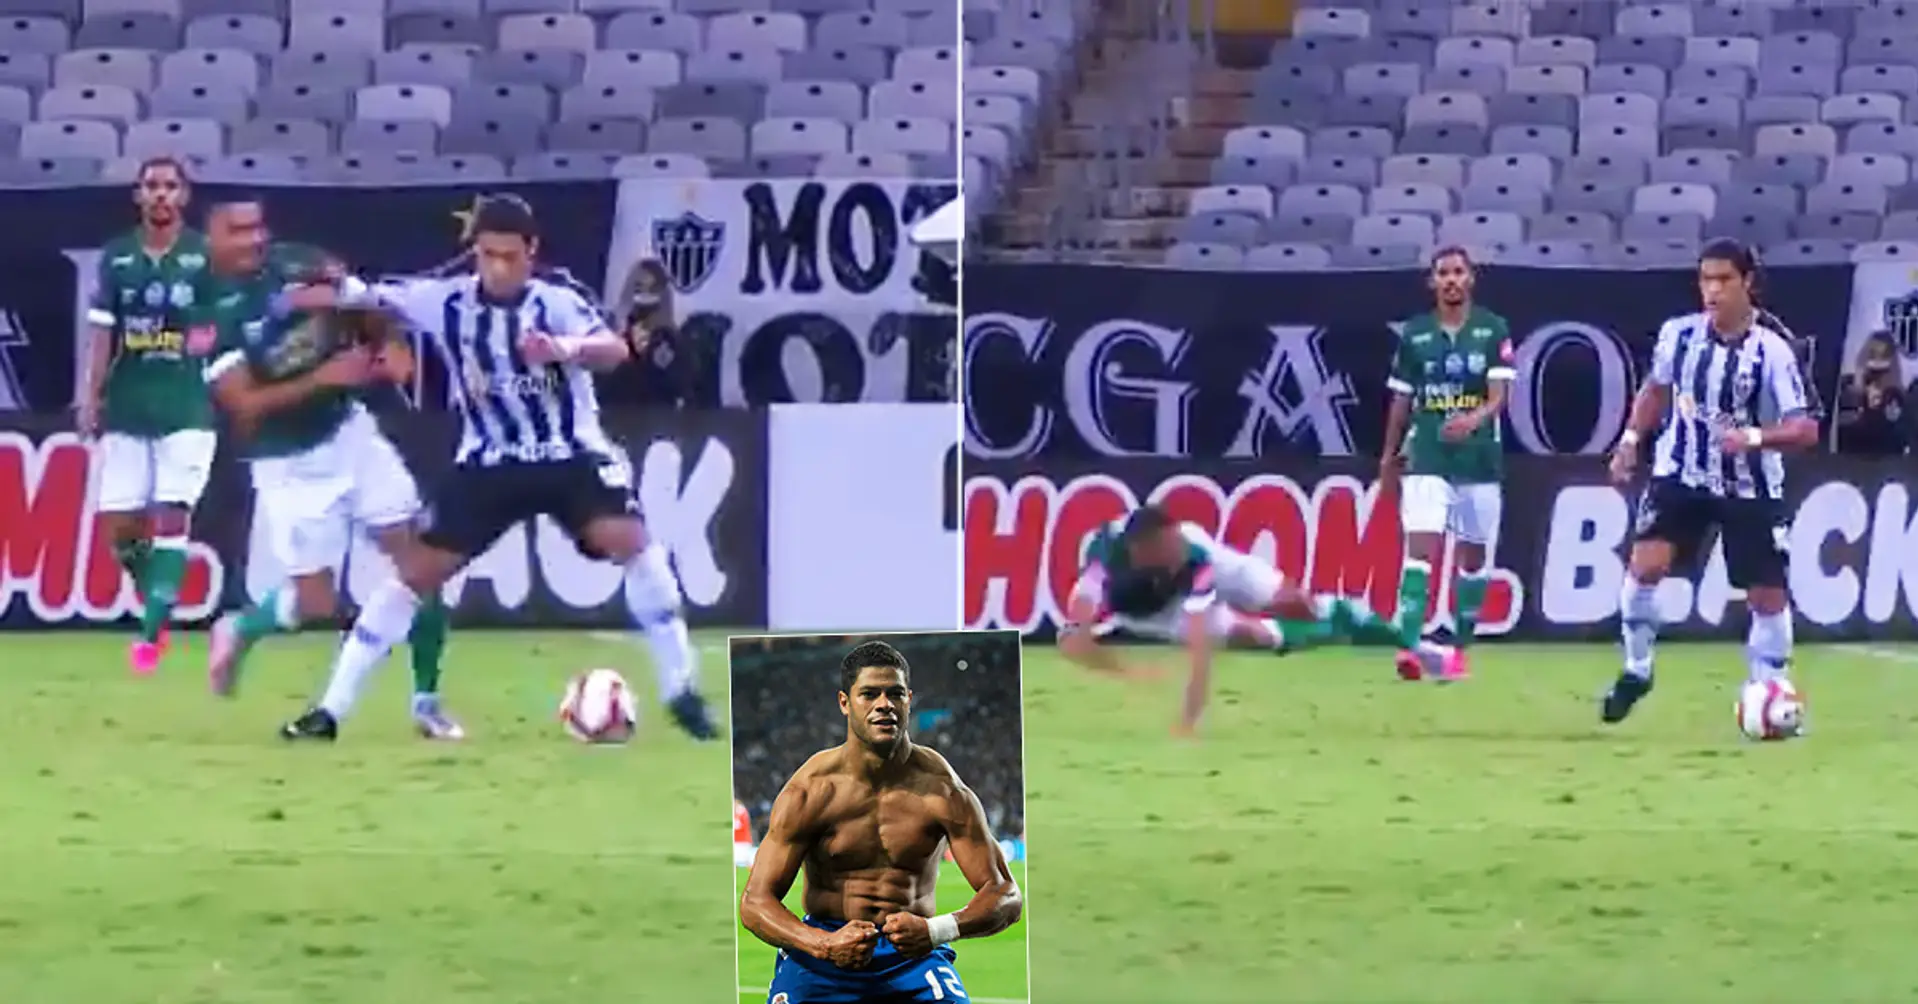 Hulk returns to Brazil, immediately sends defender flying like a paper plane